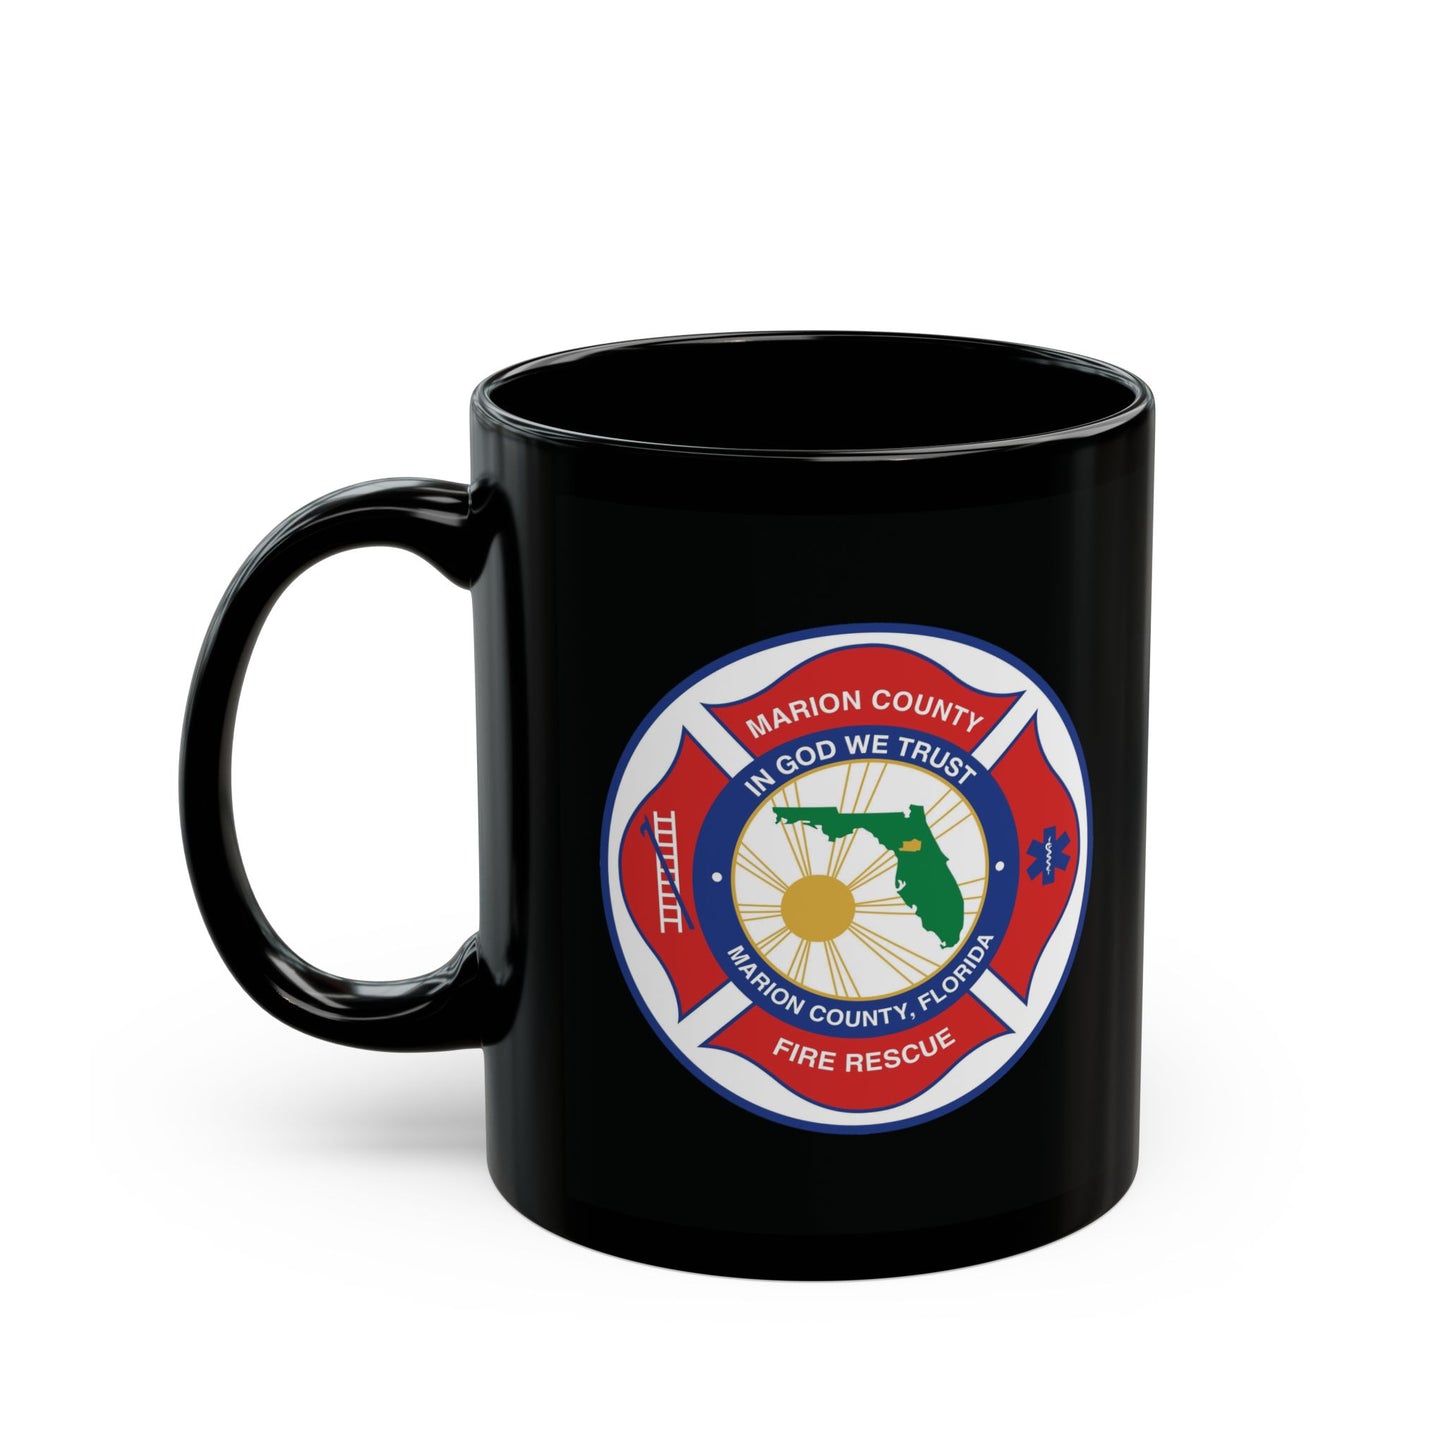 Marion County Fire Rescue Department Logo Ceramic Mug 11oz